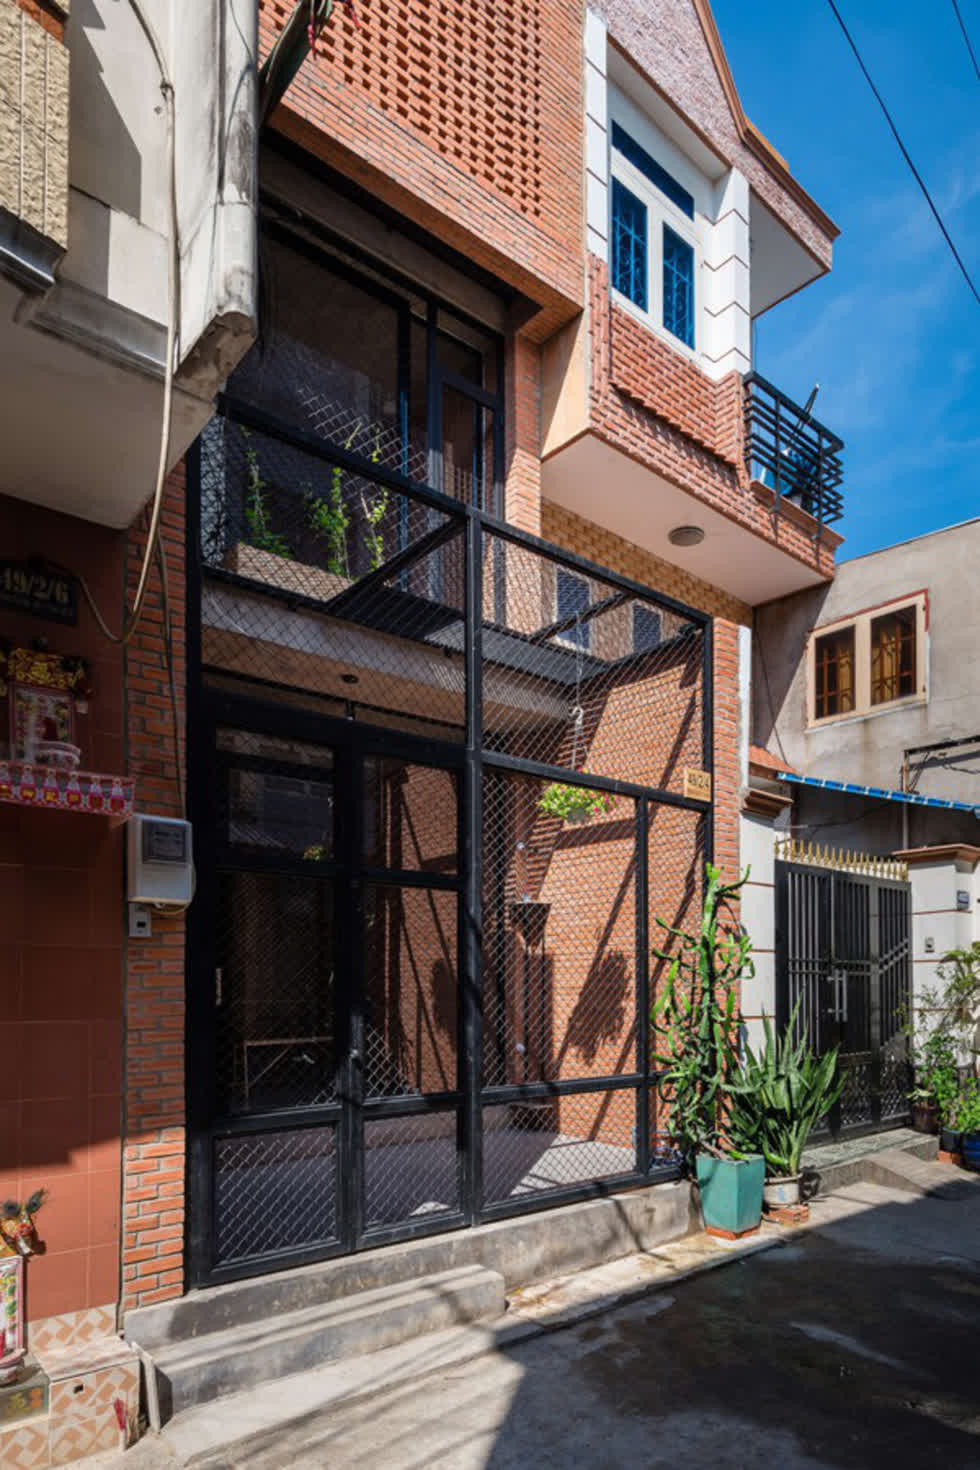 Nhà siêu nhỏ thiết kế gạch trần lạ mắt ở Sài Gòn